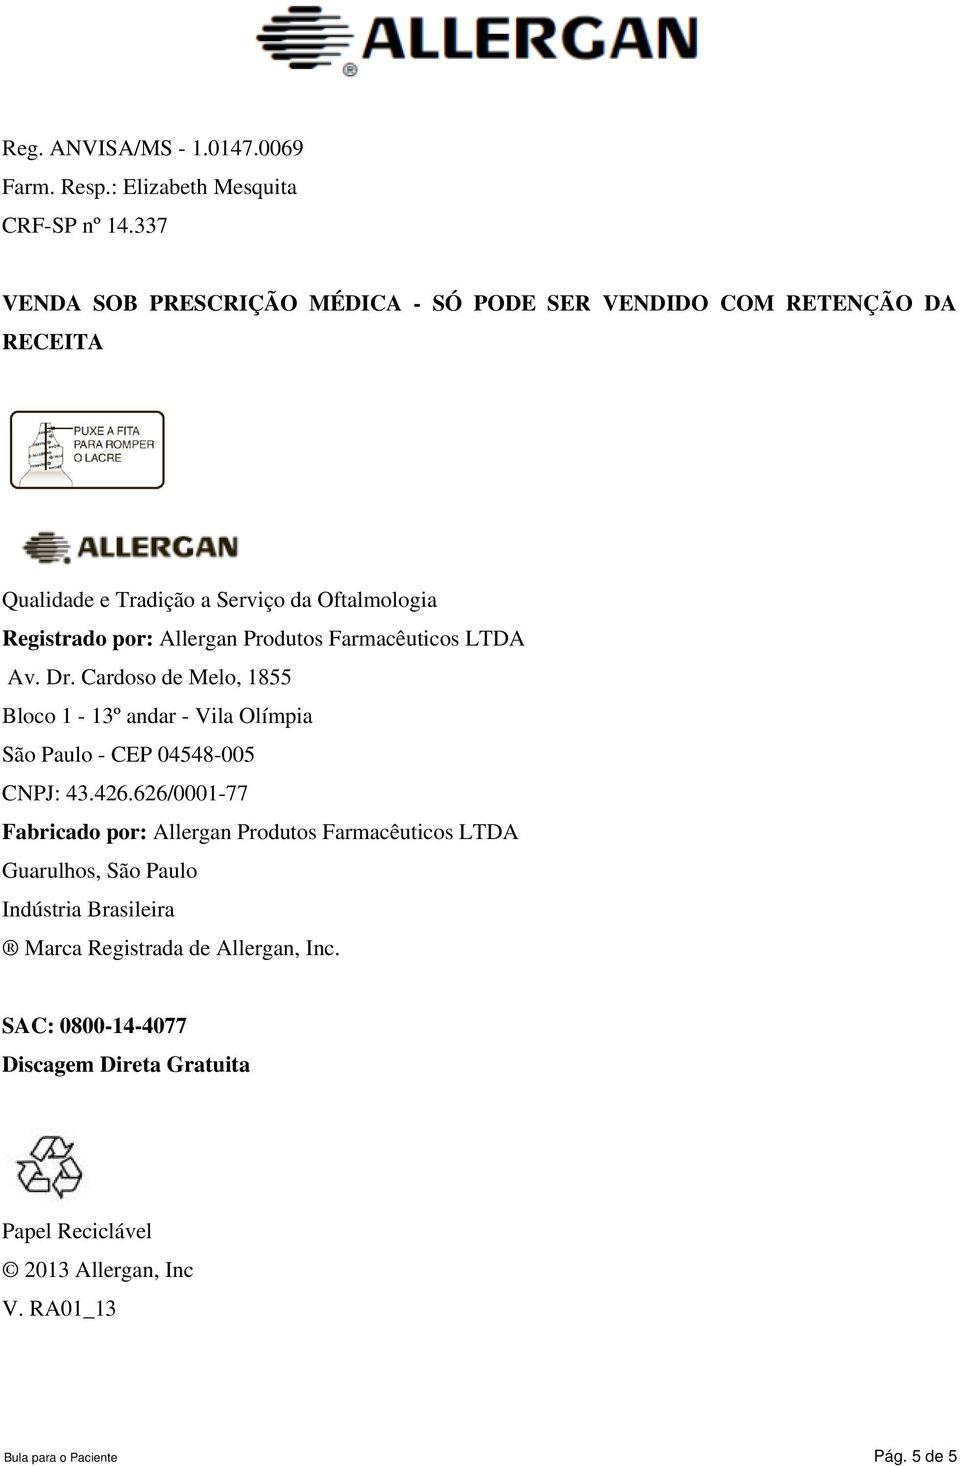 Produtos Farmacêuticos LTDA Av. Dr. Cardoso de Melo, 1855 Bloco 1-13º andar - Vila Olímpia São Paulo - CEP 04548-005 CNPJ: 43.426.